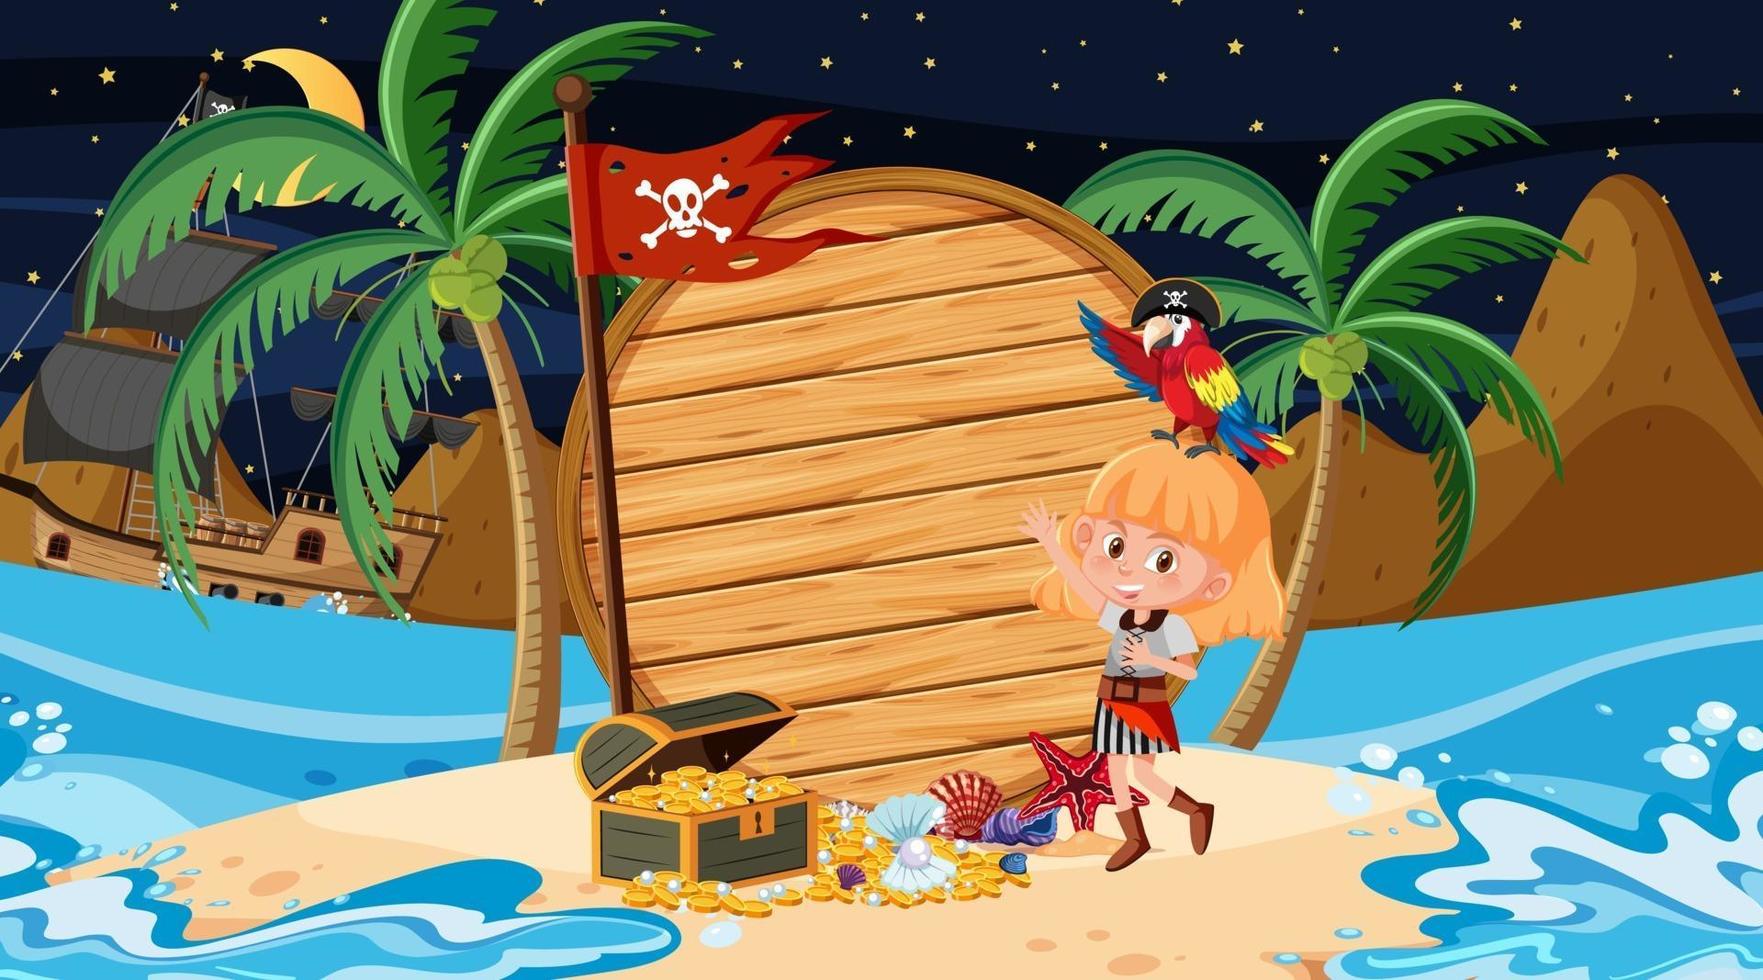 bambini pirata sulla scena notturna della spiaggia con un modello di banner in legno vuoto vettore